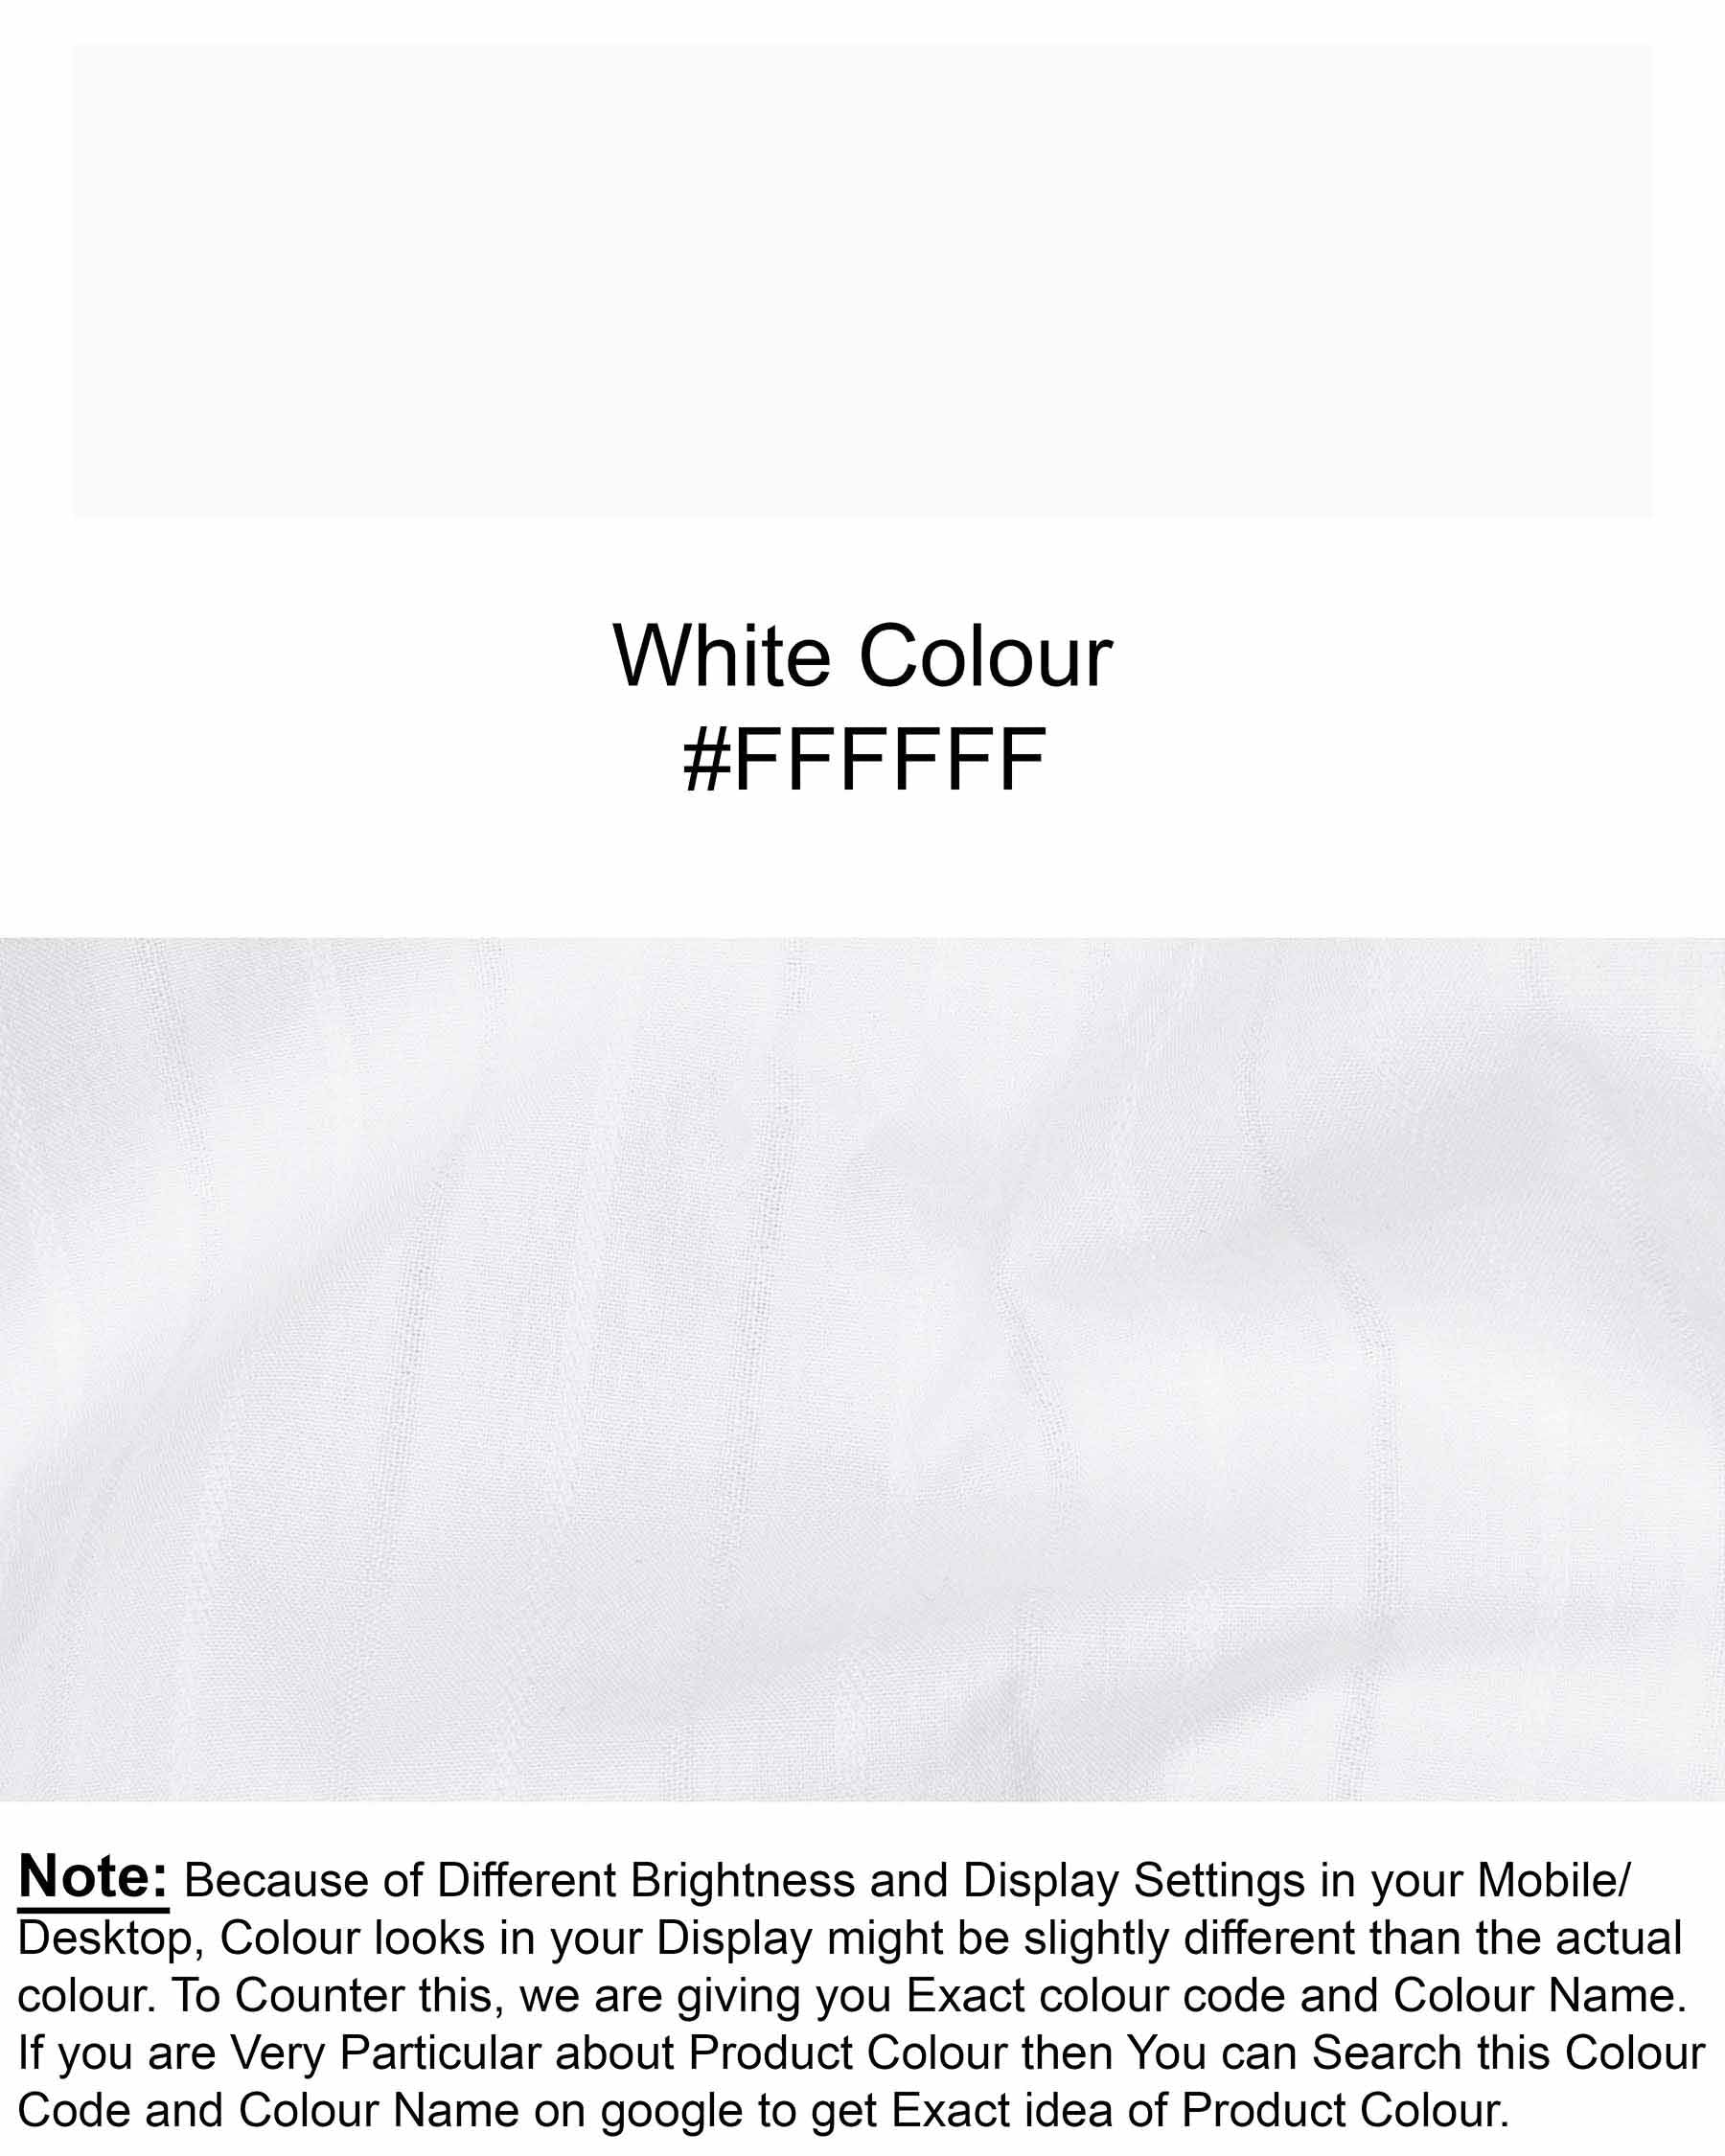 Bright White Dobby Textured Premium Giza Cotton Shirt 6163-CA-38, 6163-CA-H-38, 6163-CA-39, 6163-CA-H-39, 6163-CA-40, 6163-CA-H-40, 6163-CA-42, 6163-CA-H-42, 6163-CA-44, 6163-CA-H-44, 6163-CA-46, 6163-CA-H-46, 6163-CA-48, 6163-CA-H-48, 6163-CA-50, 6163-CA-H-50, 6163-CA-52, 6163-CA-H-52